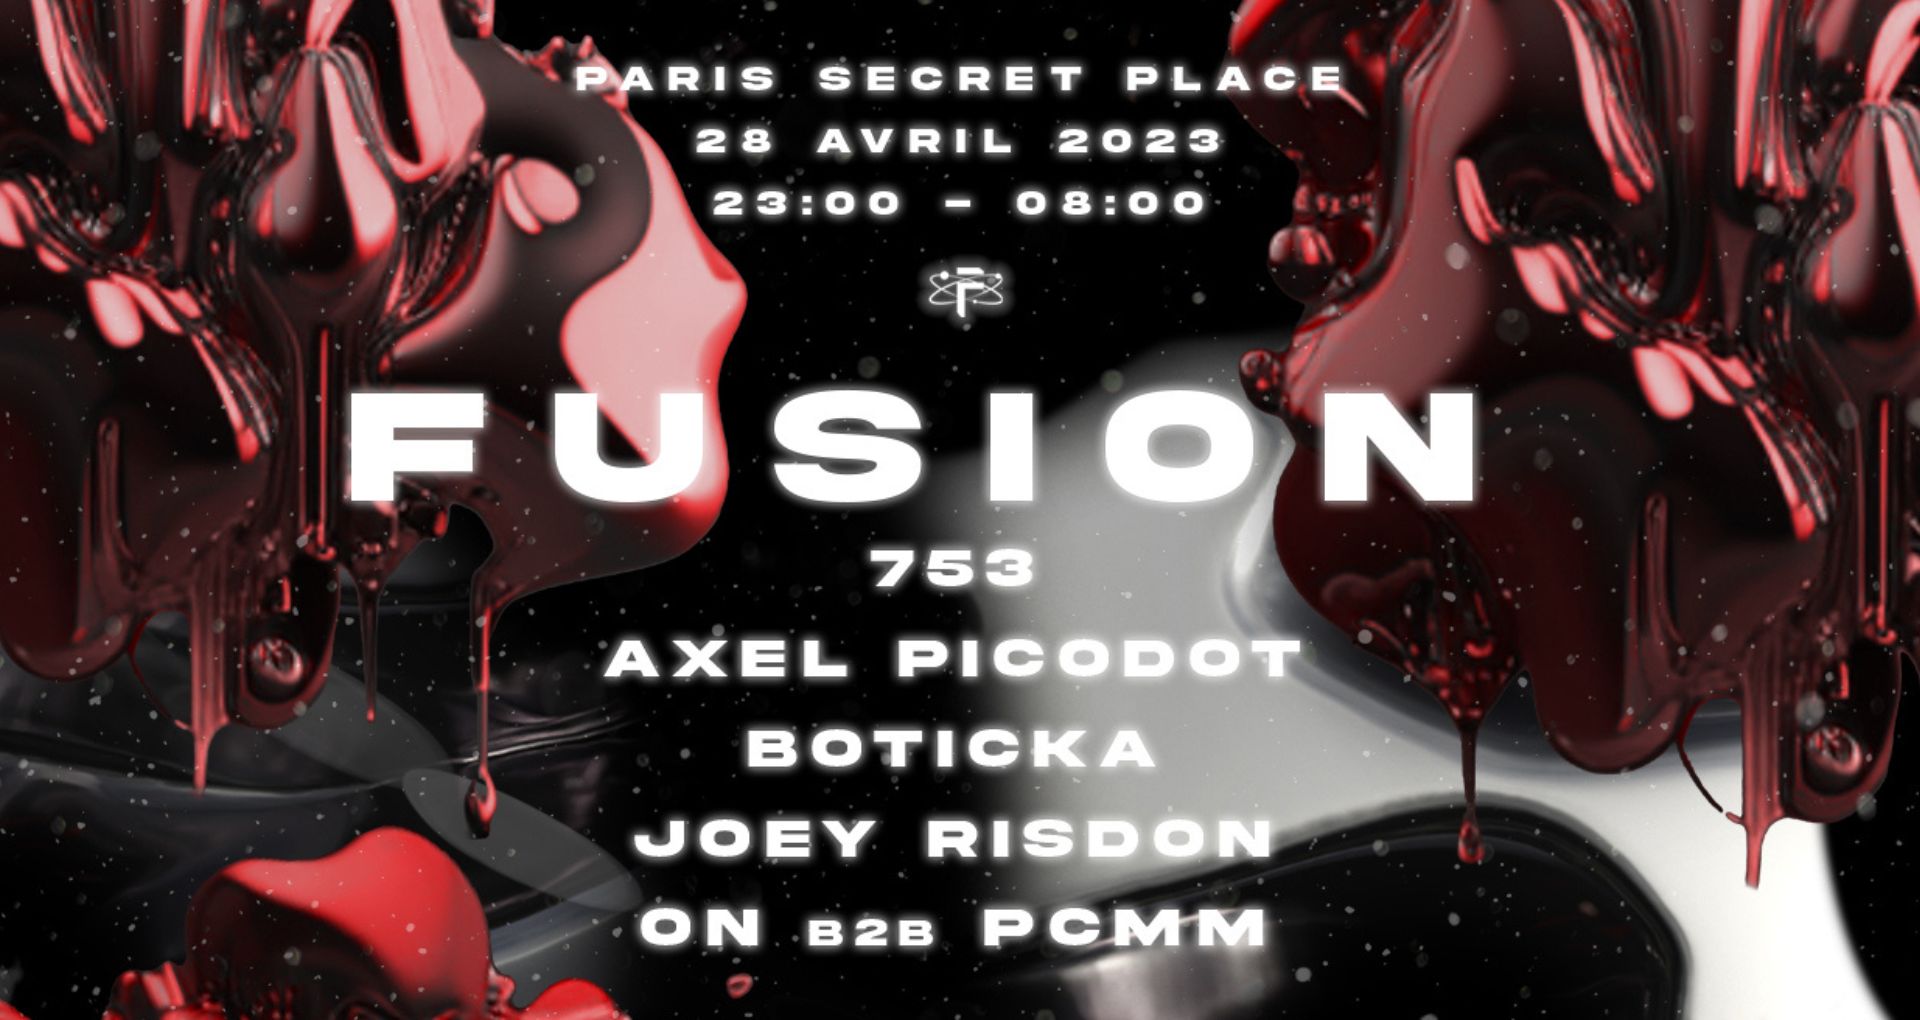 Affiche de la prochaine soirée Fusion